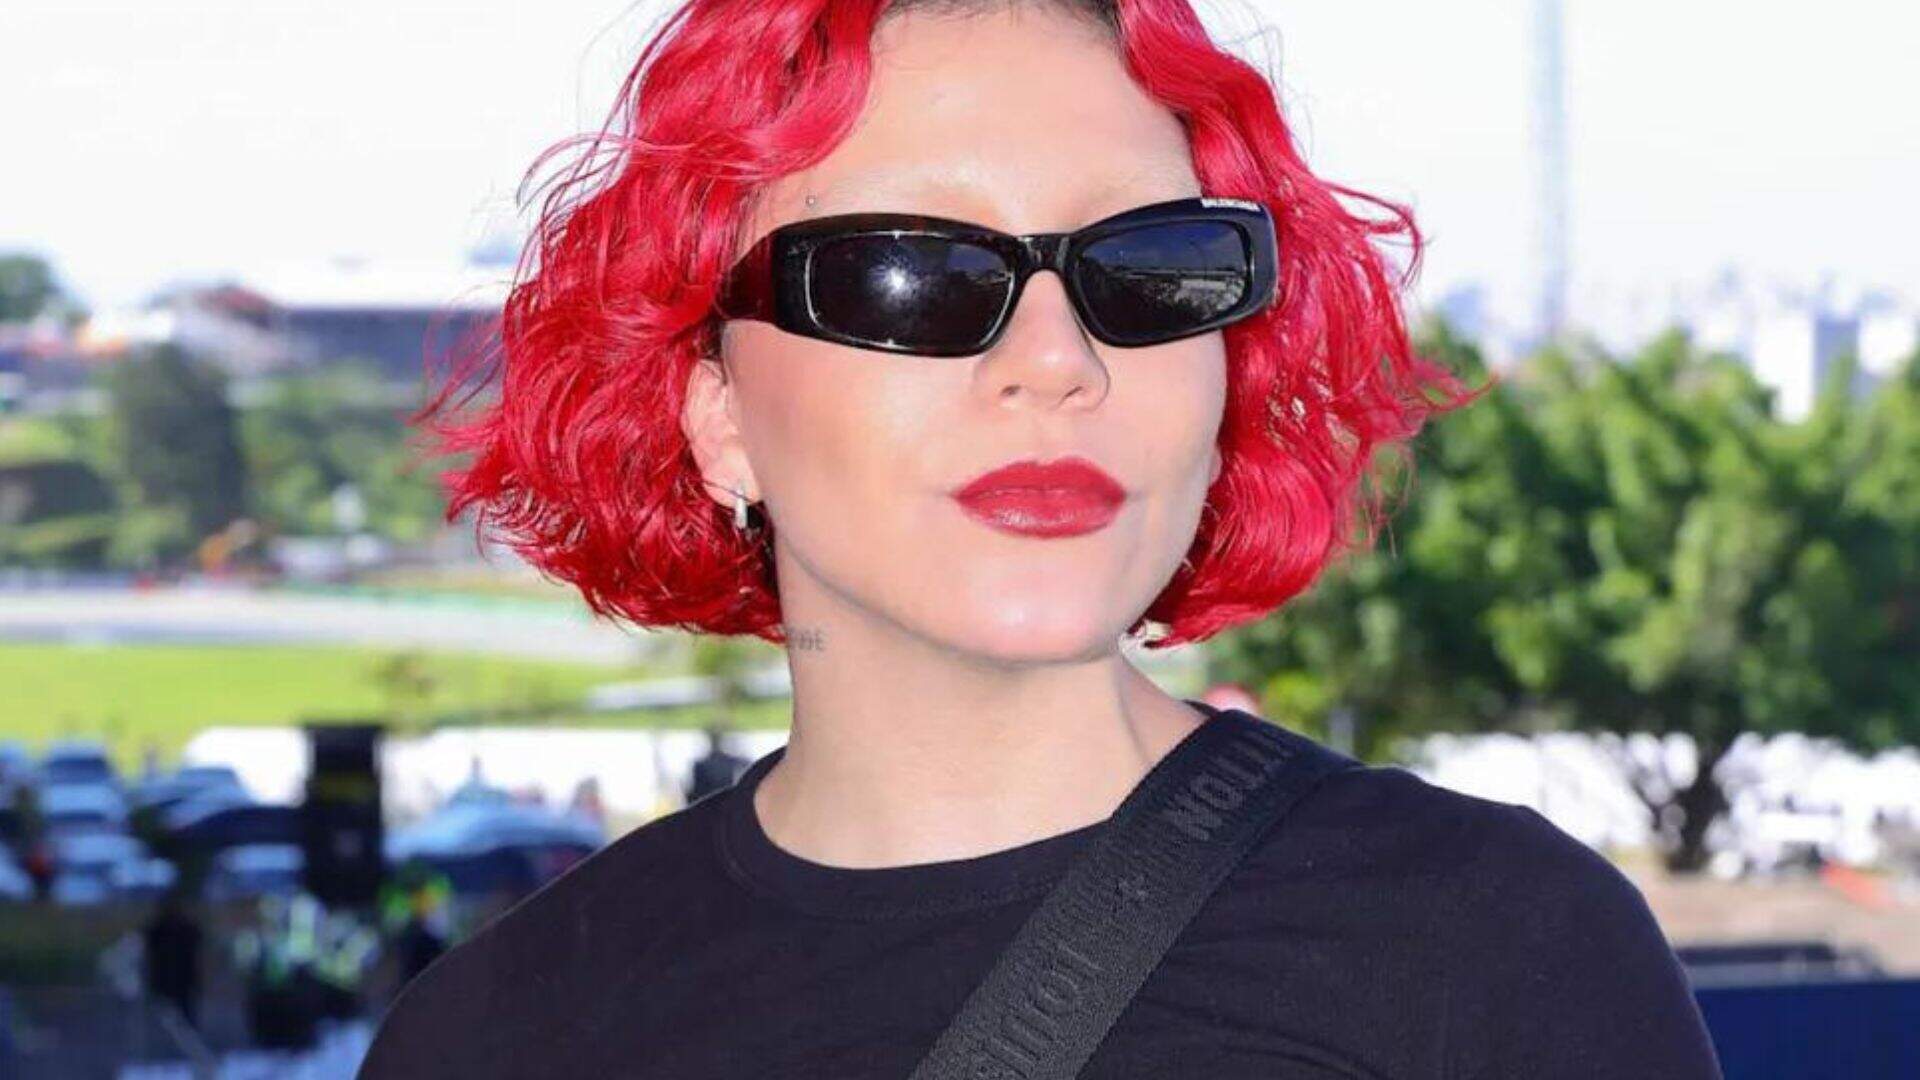 De sobrancelha descolorida e cabelo vermelho, Priscilla (ex-Alcantara) divide opiniões com o novo visual - Metropolitana FM